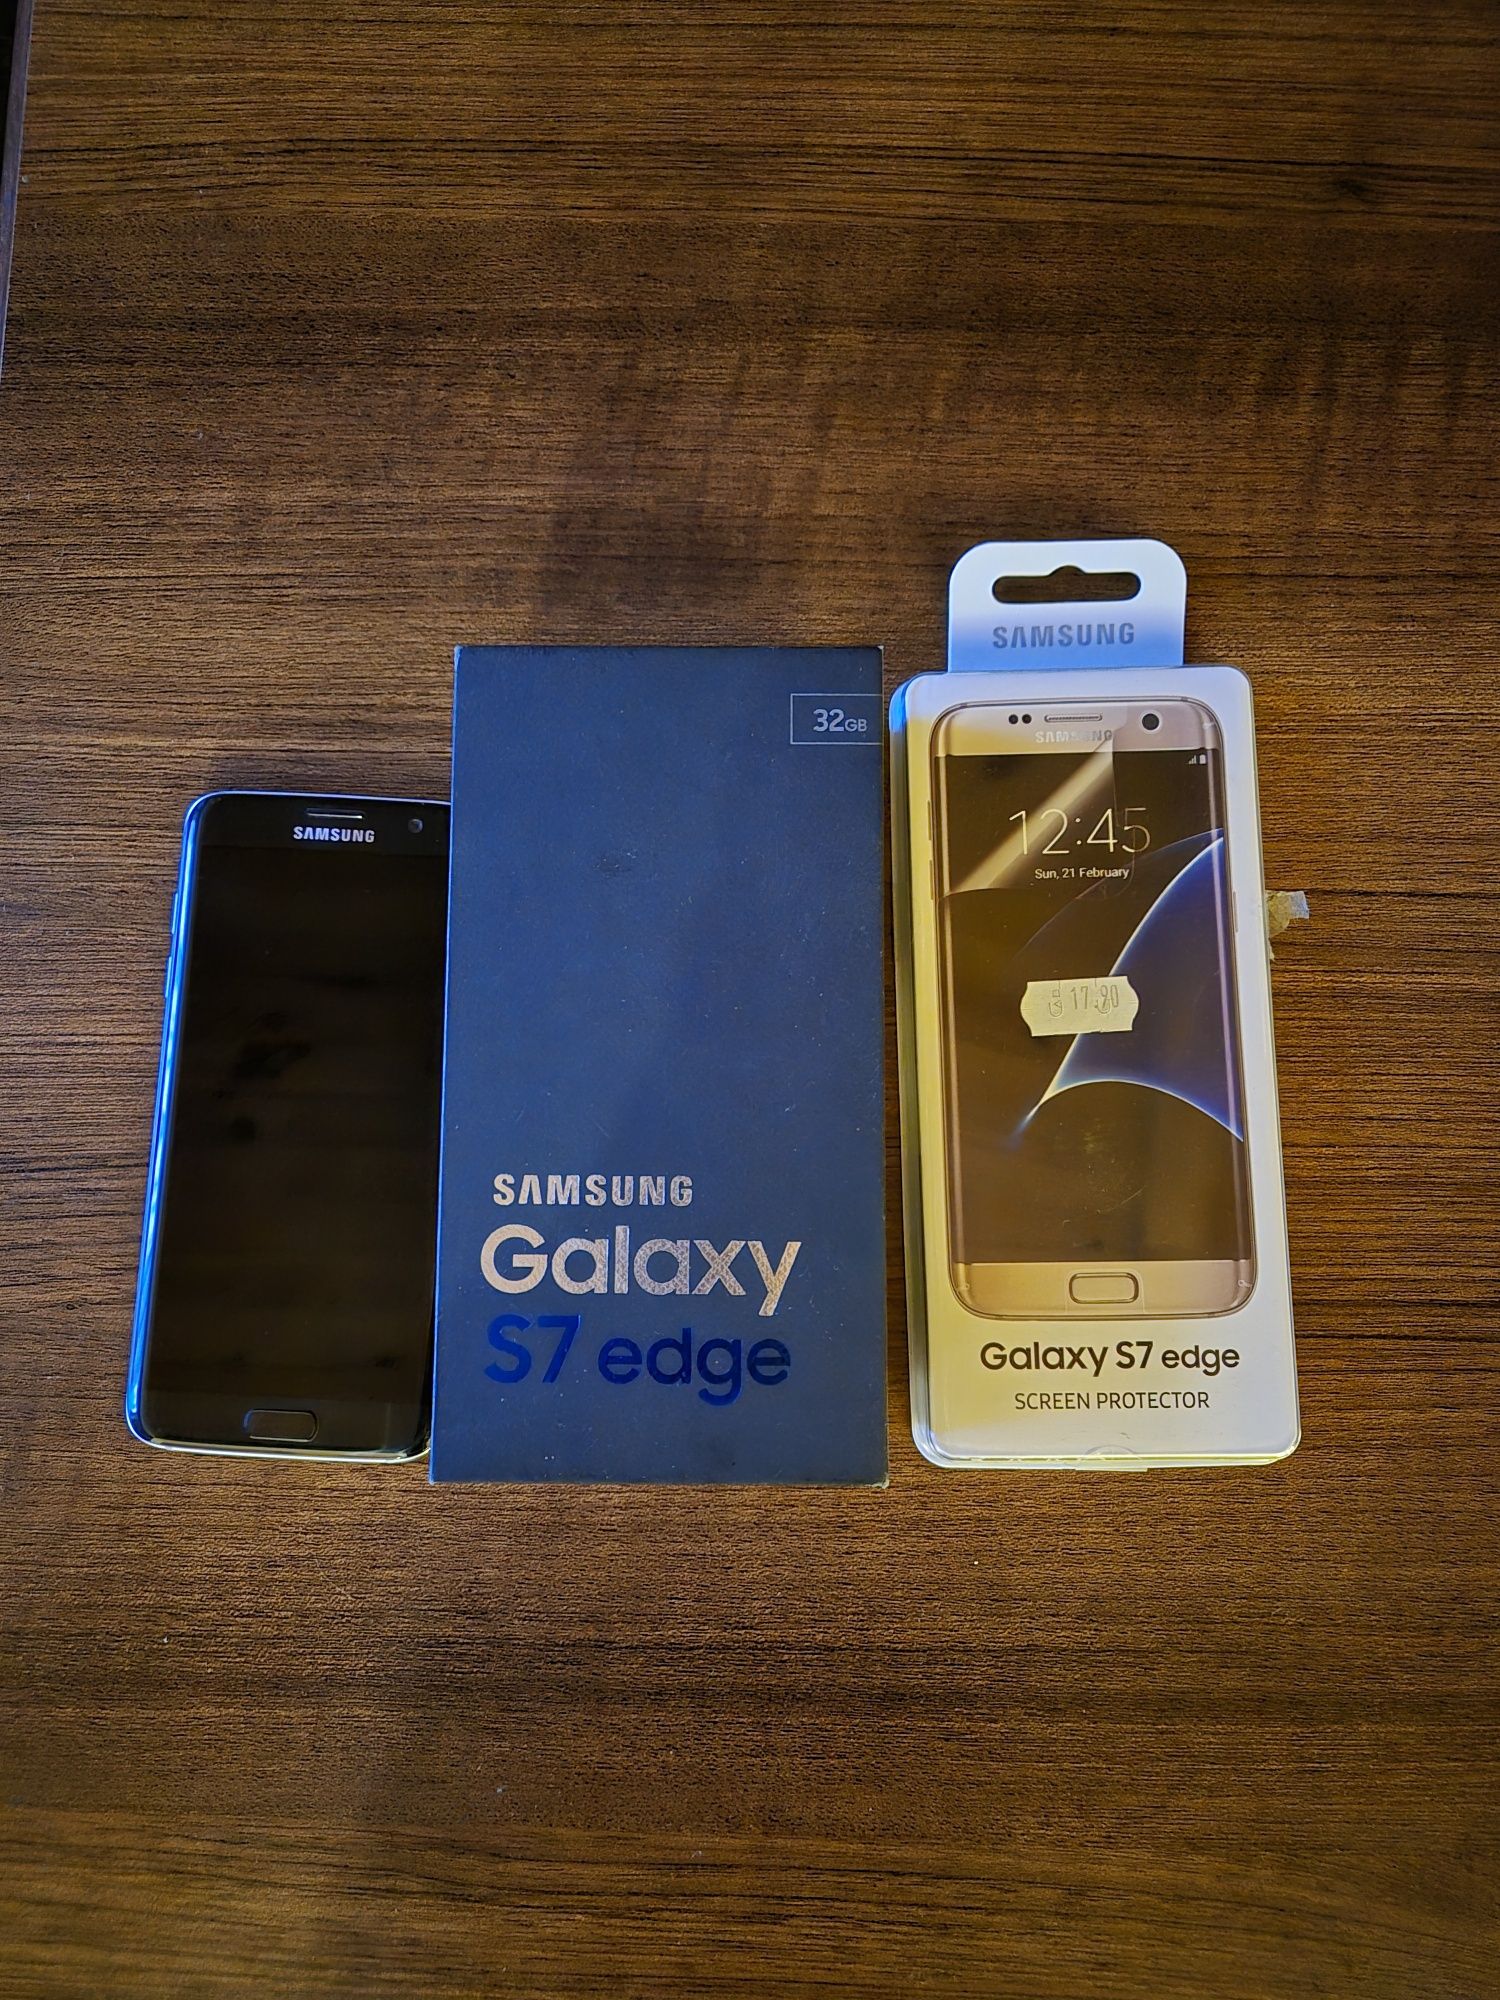 Sumsung Galaxy S7 edge